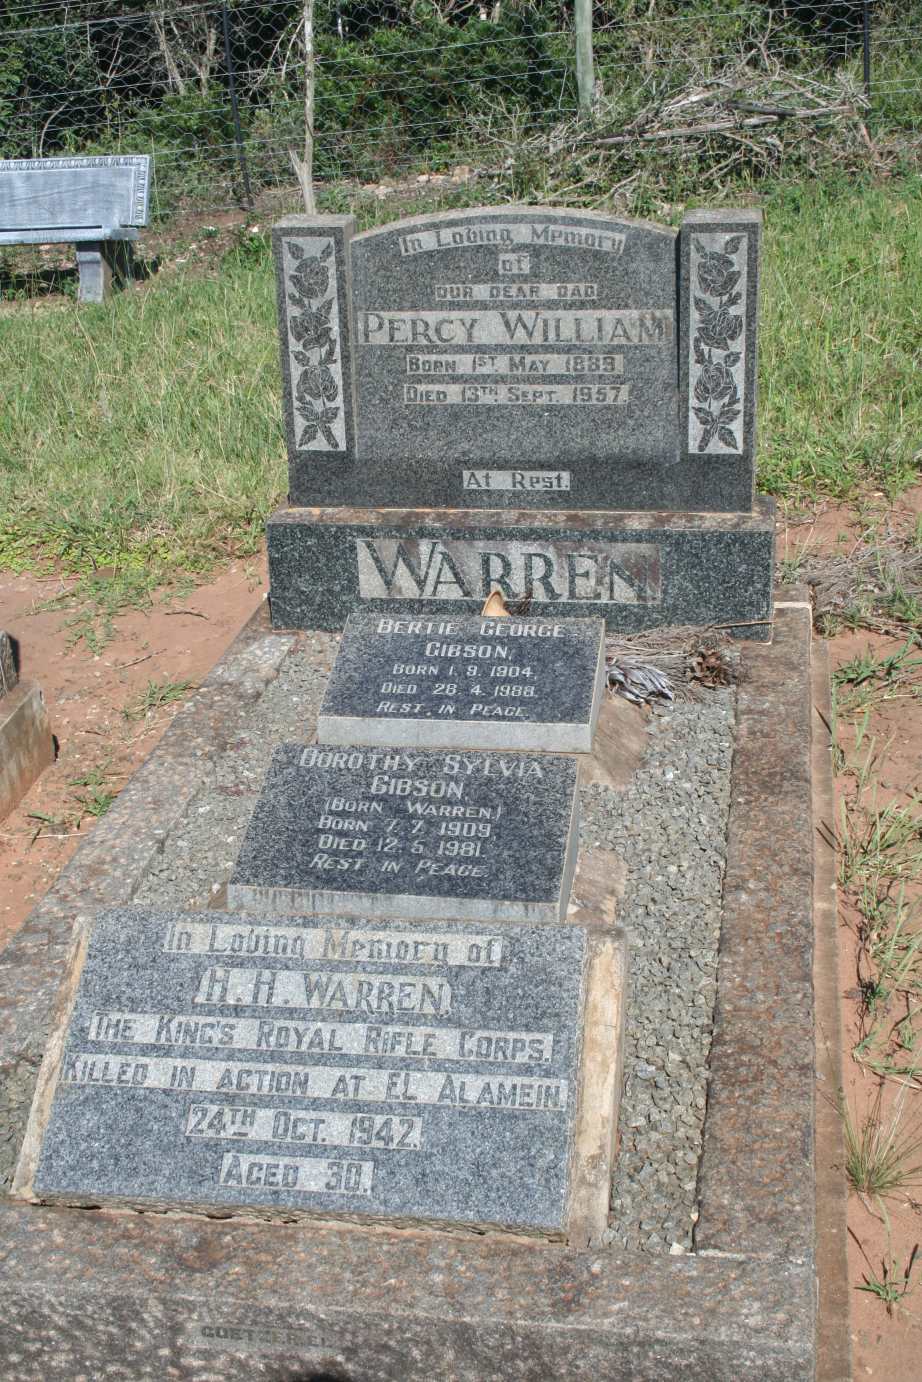 WARREN Percy 1889-1957 :: GIBSON Bertie George 1904-1988 & Dorothy Sylvia WARREN 1909-1981 :: WARREN H.H. -1942